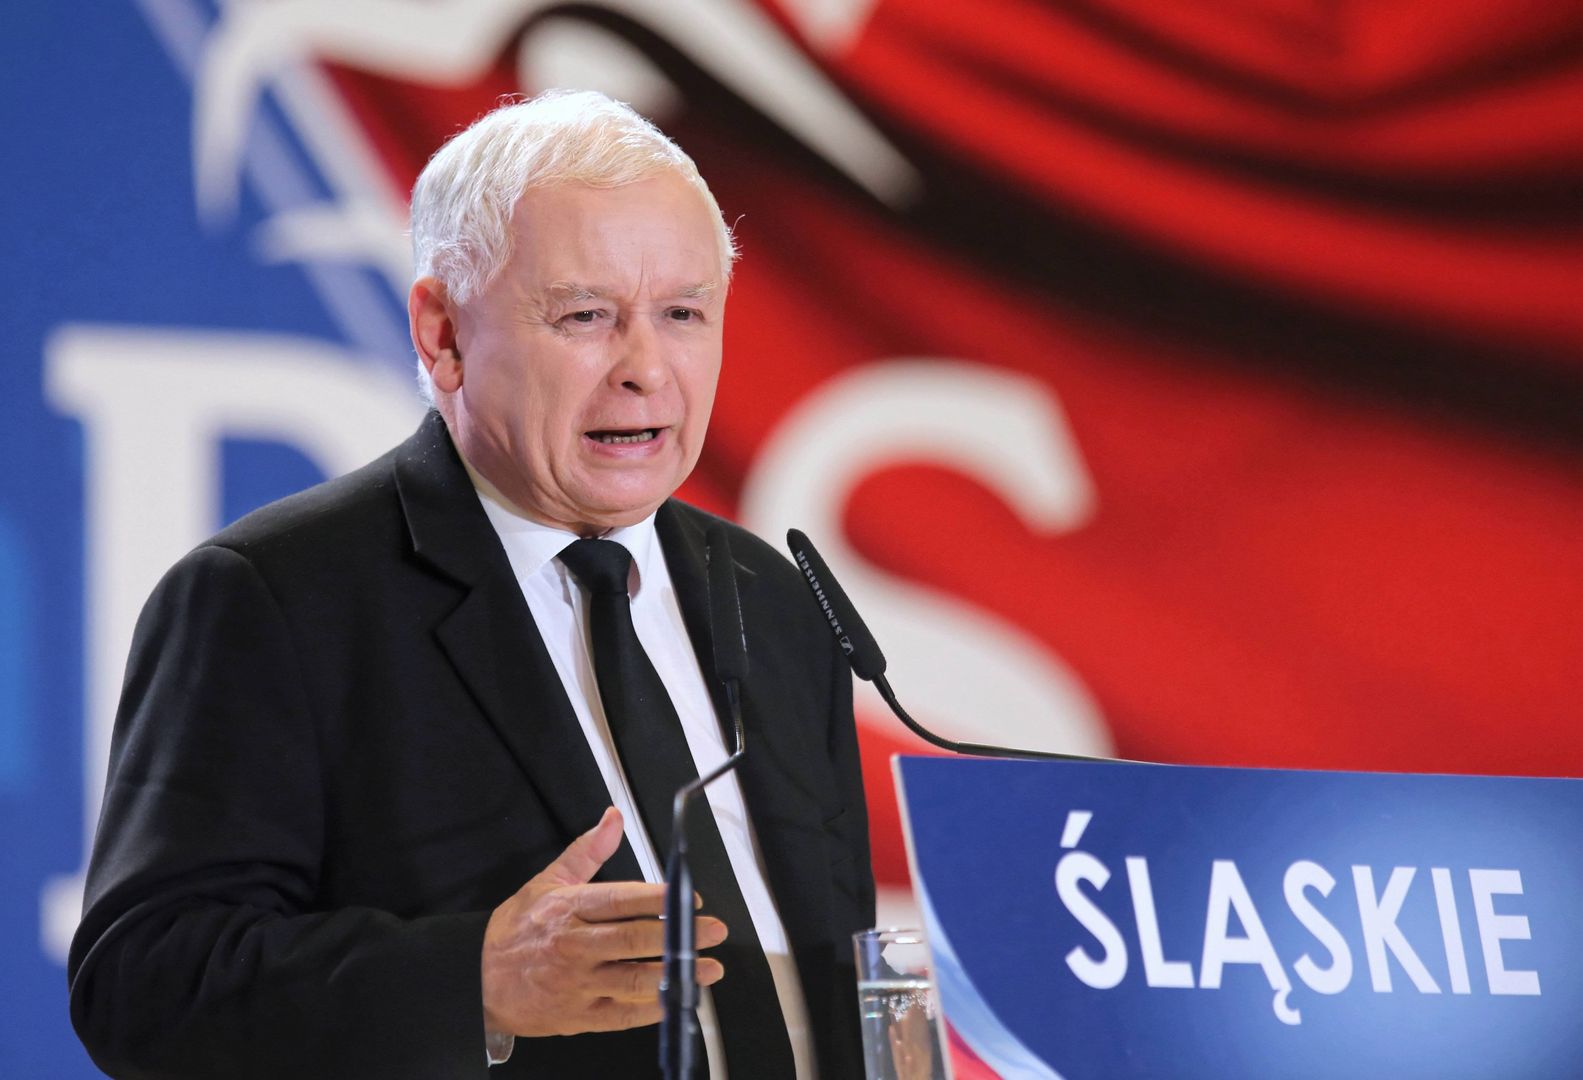 Na konwencji PiS swoje przemówienie wygłosił Jarosław Kaczyński